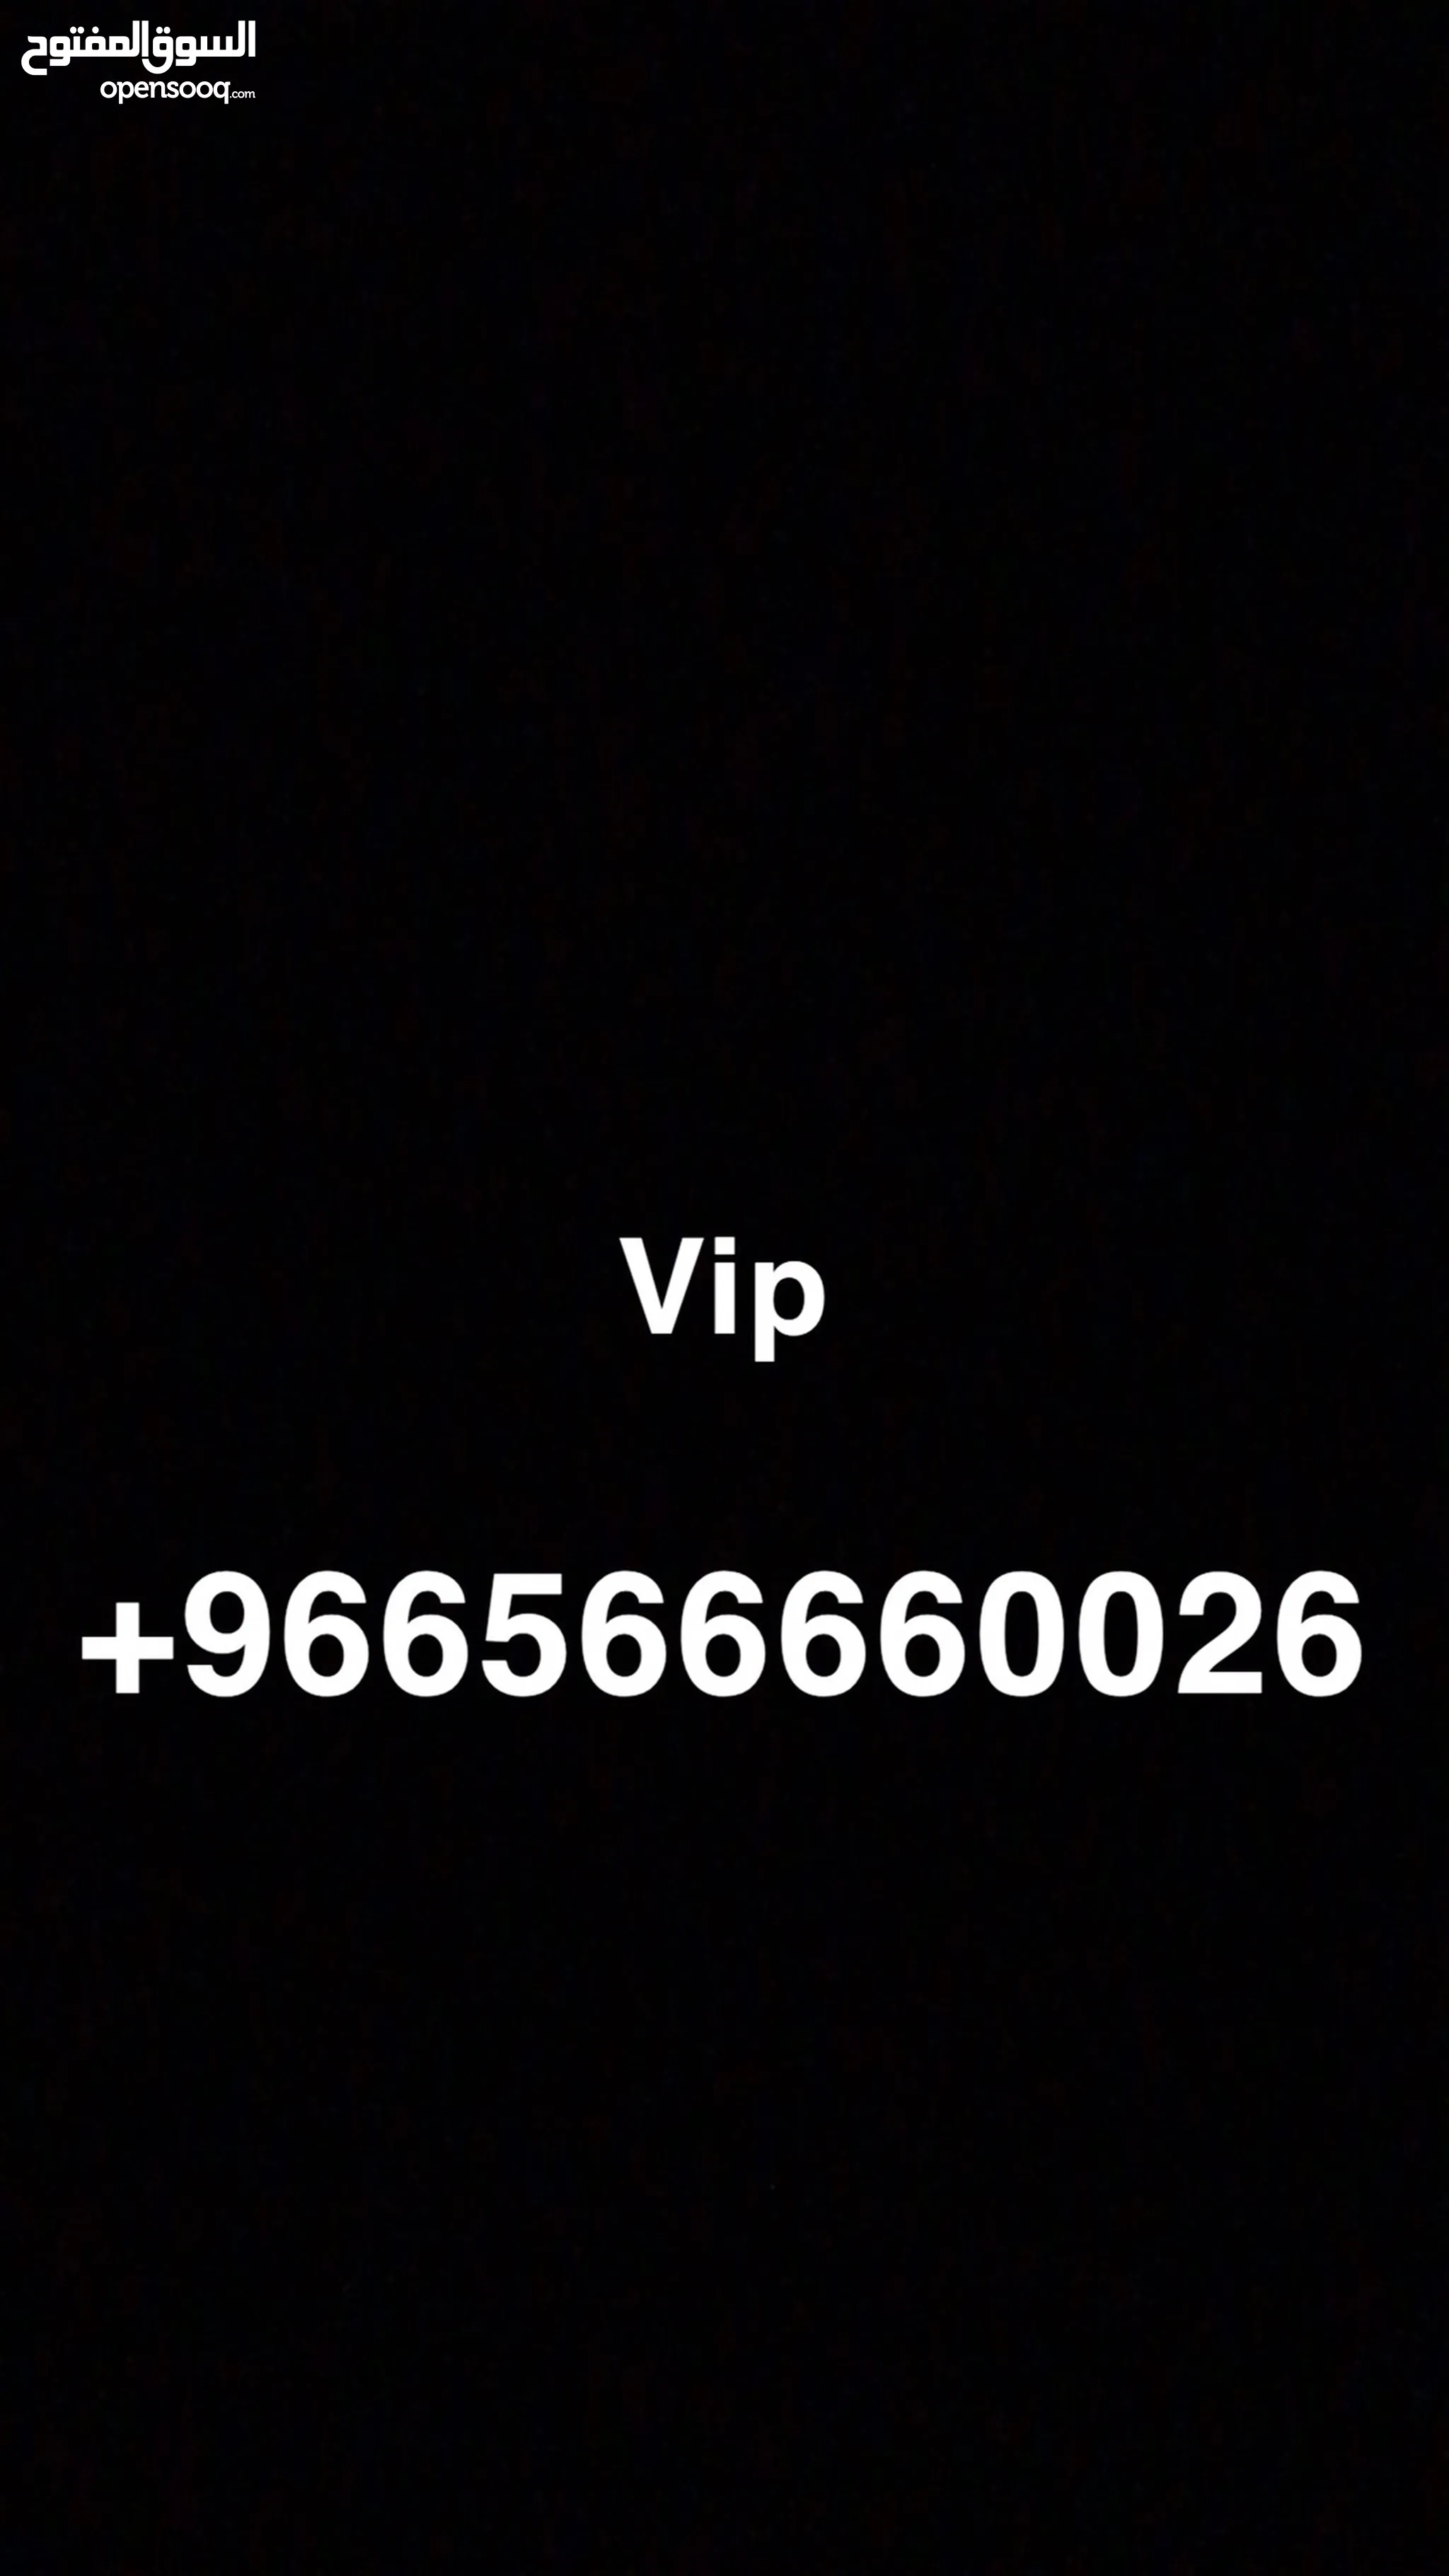 ارقام مميزة للهواتف : ارقام مميزة اتصالات : VIP : ارقام دو : ارخص الأسعار  في الإمارات | السوق المفتوح